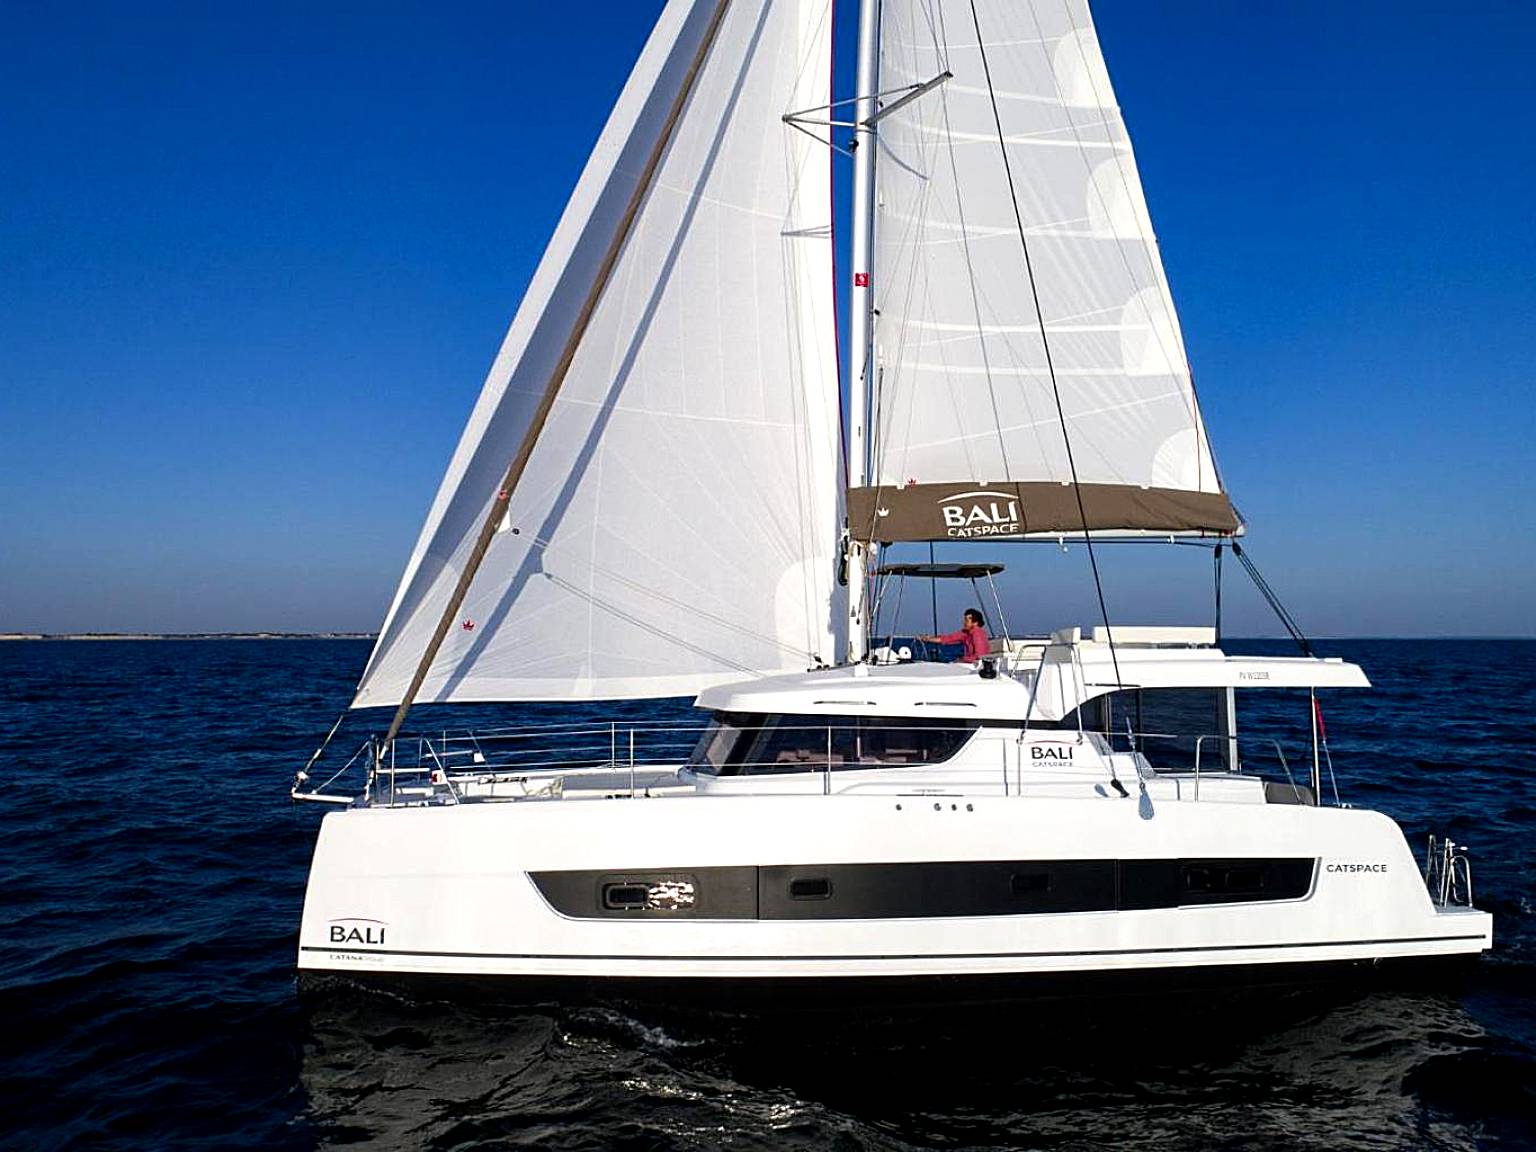 Private Exclusive Catamaran 'Hang Loose'